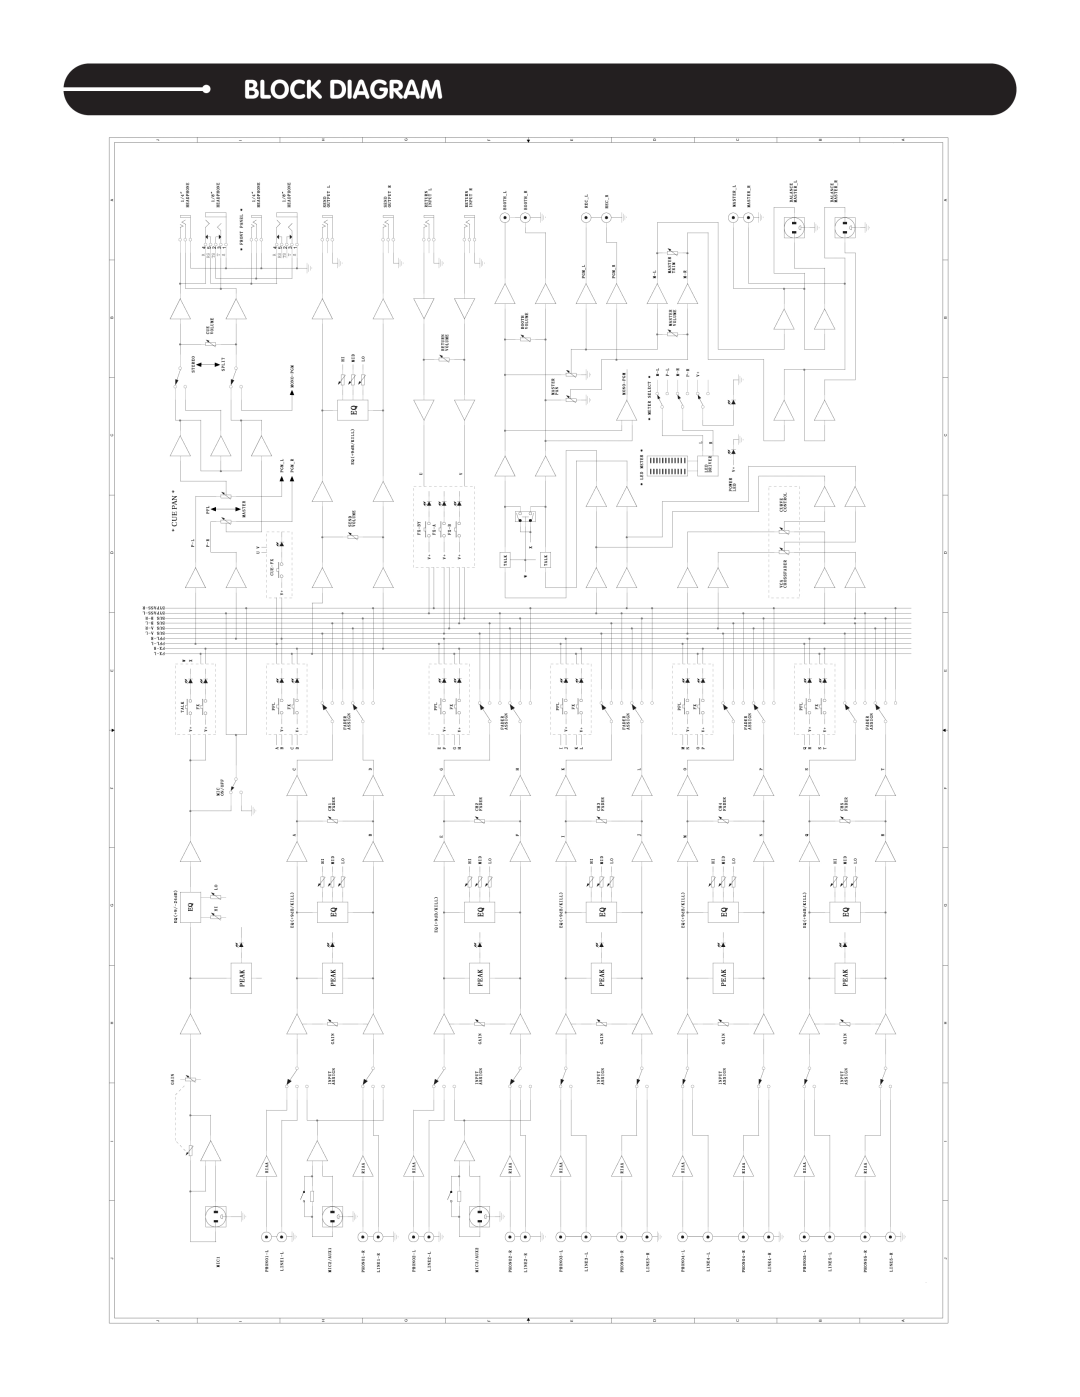 Stanton M.505 manual Block Diagram 